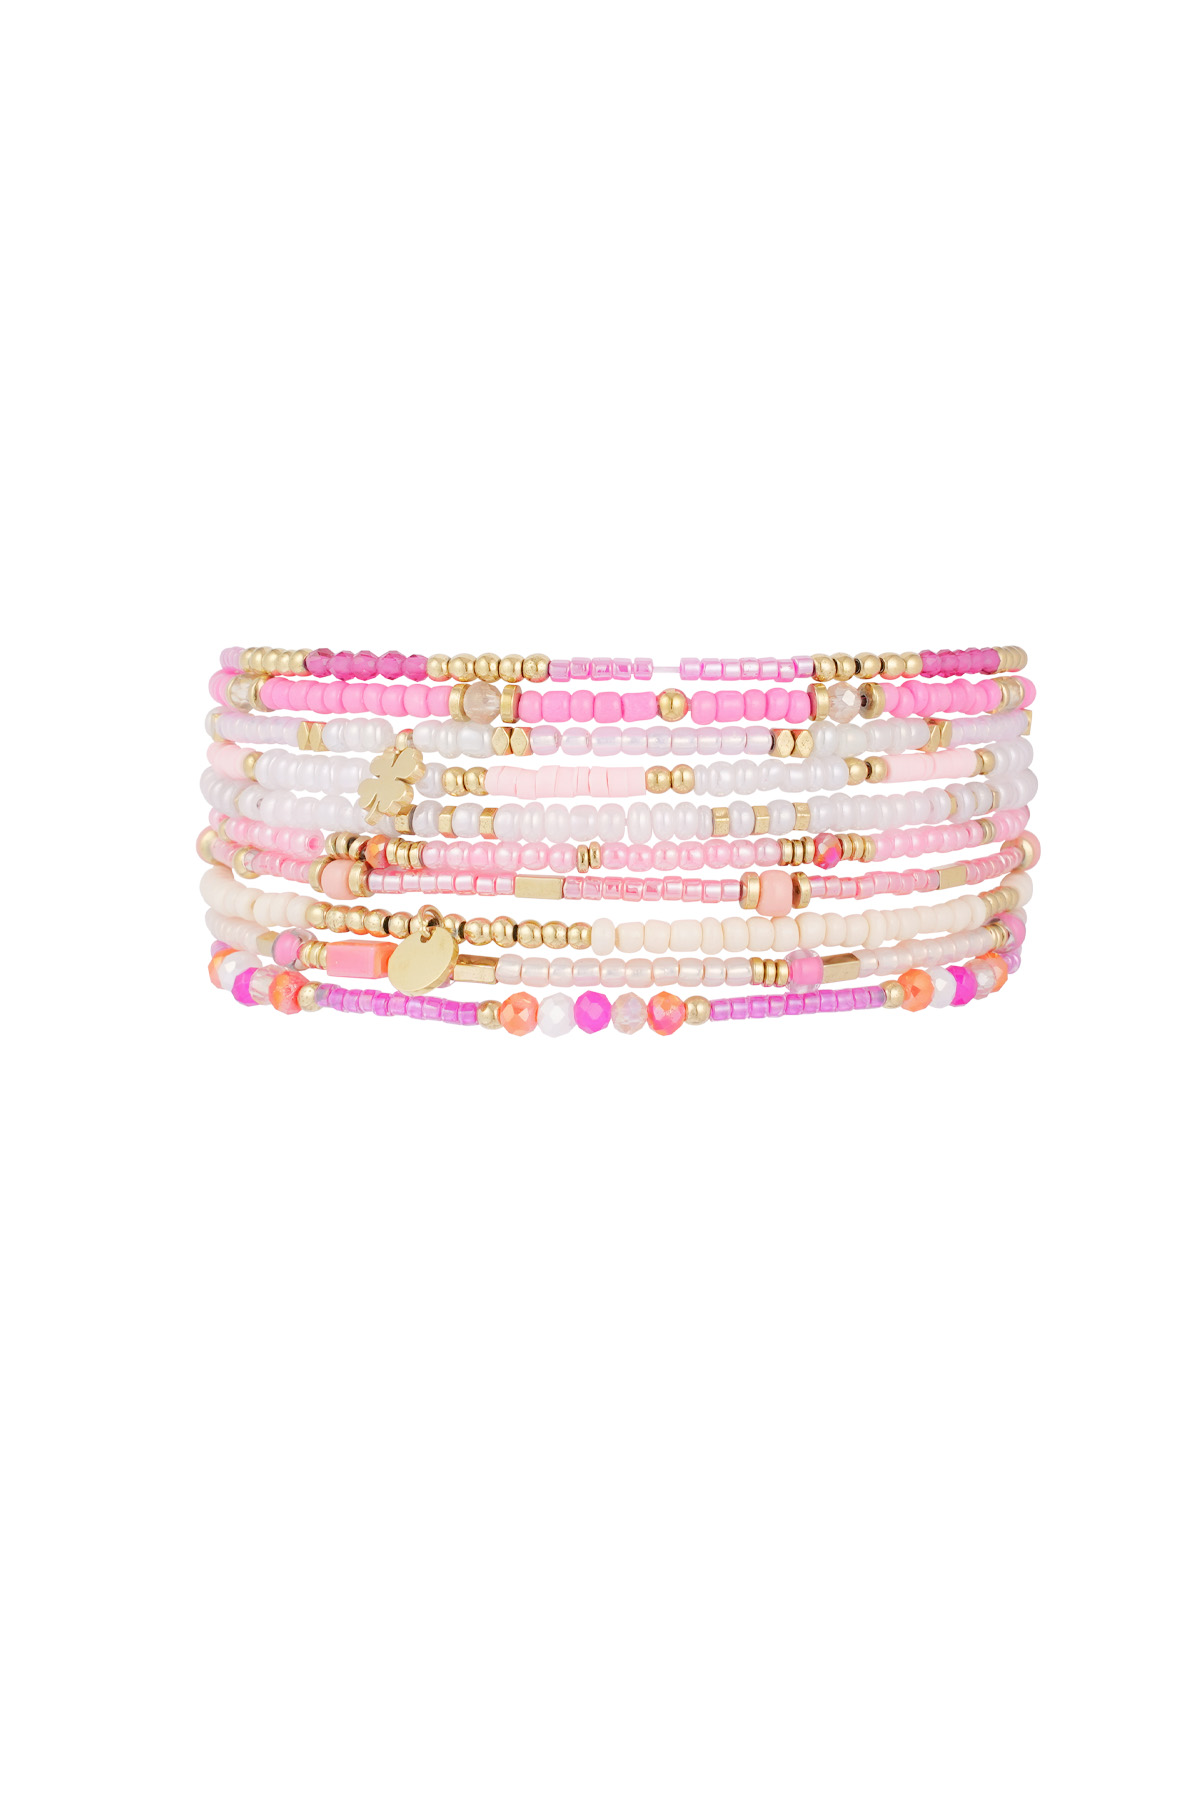 Pink cloud bracelet  Picture2